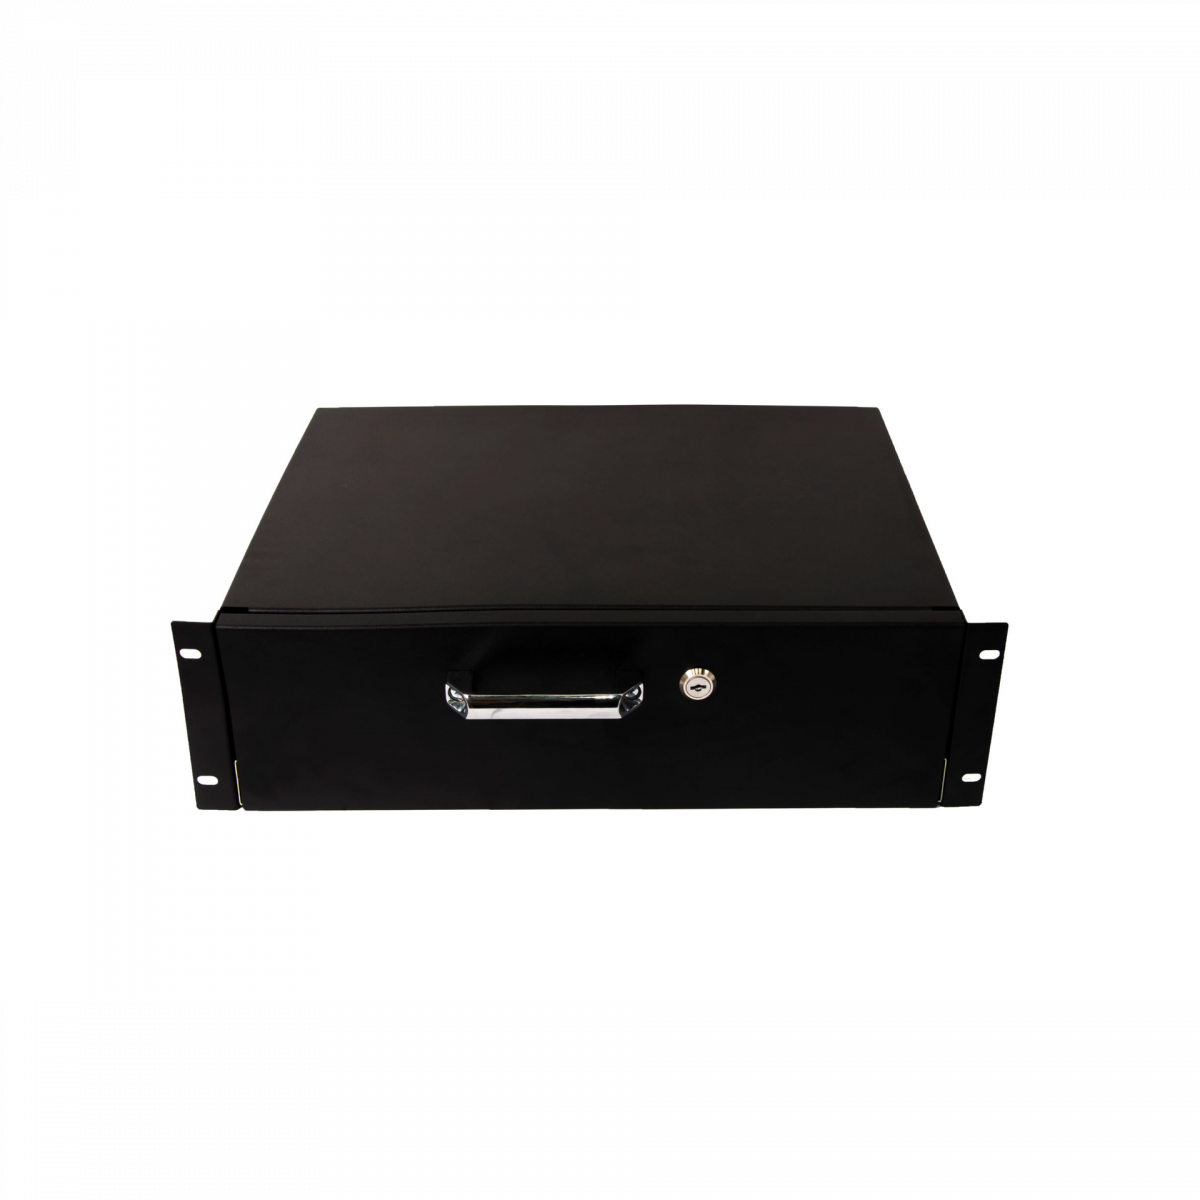 Выдвижной ящик для документов глубиной 355мм, высота 3U, цвет-черный (SNR-CASE-355-3U-B)